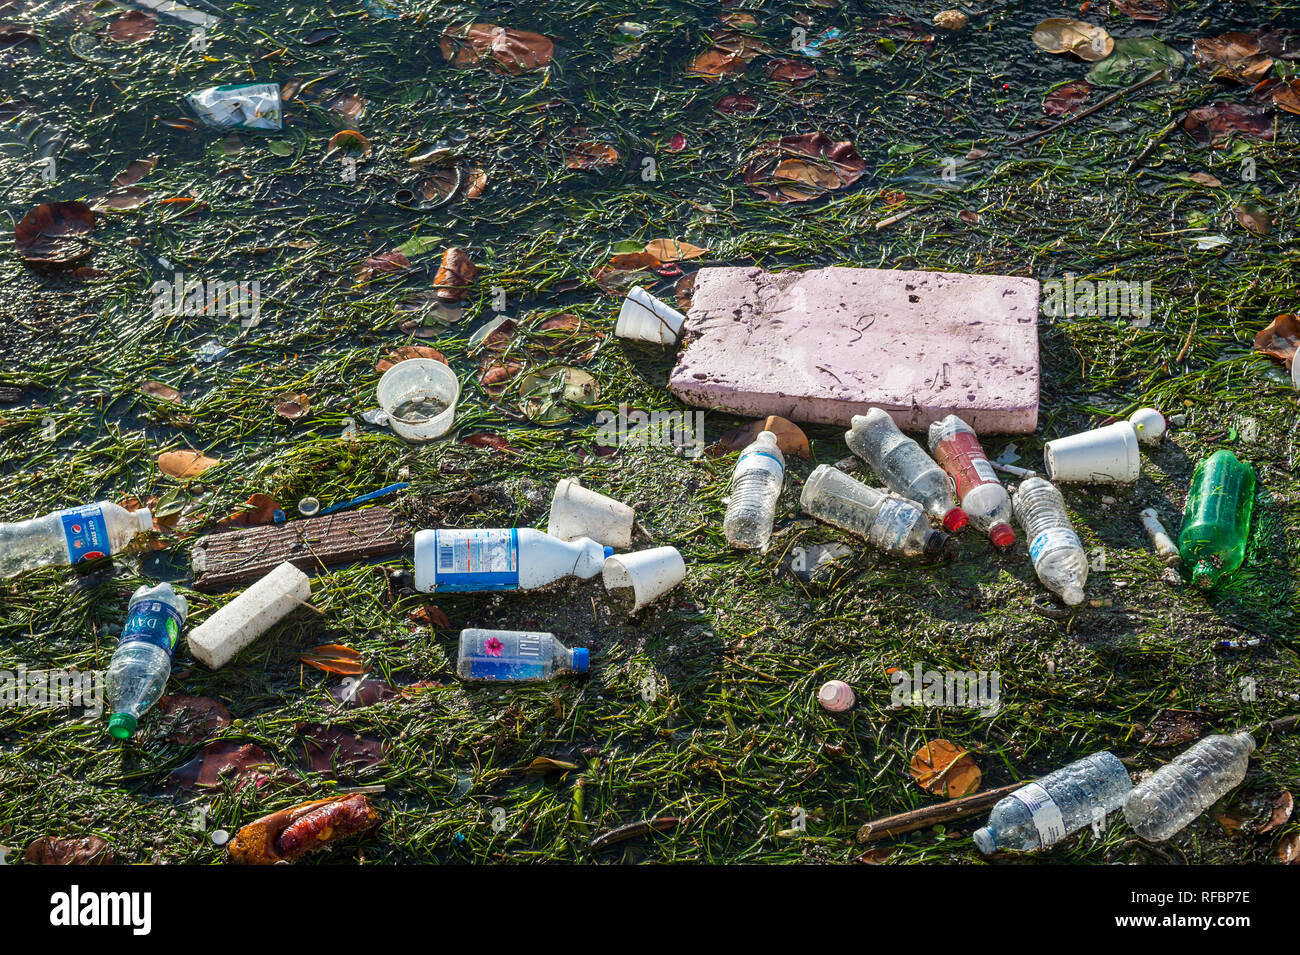 MIAMI - Septembre, 2018 : les bouteilles d'eau en plastique, des tasses, et des morceaux de styromousse flotter avec les herbiers dans Biscayne Bay, où la pollution des océans est un problème. Banque D'Images